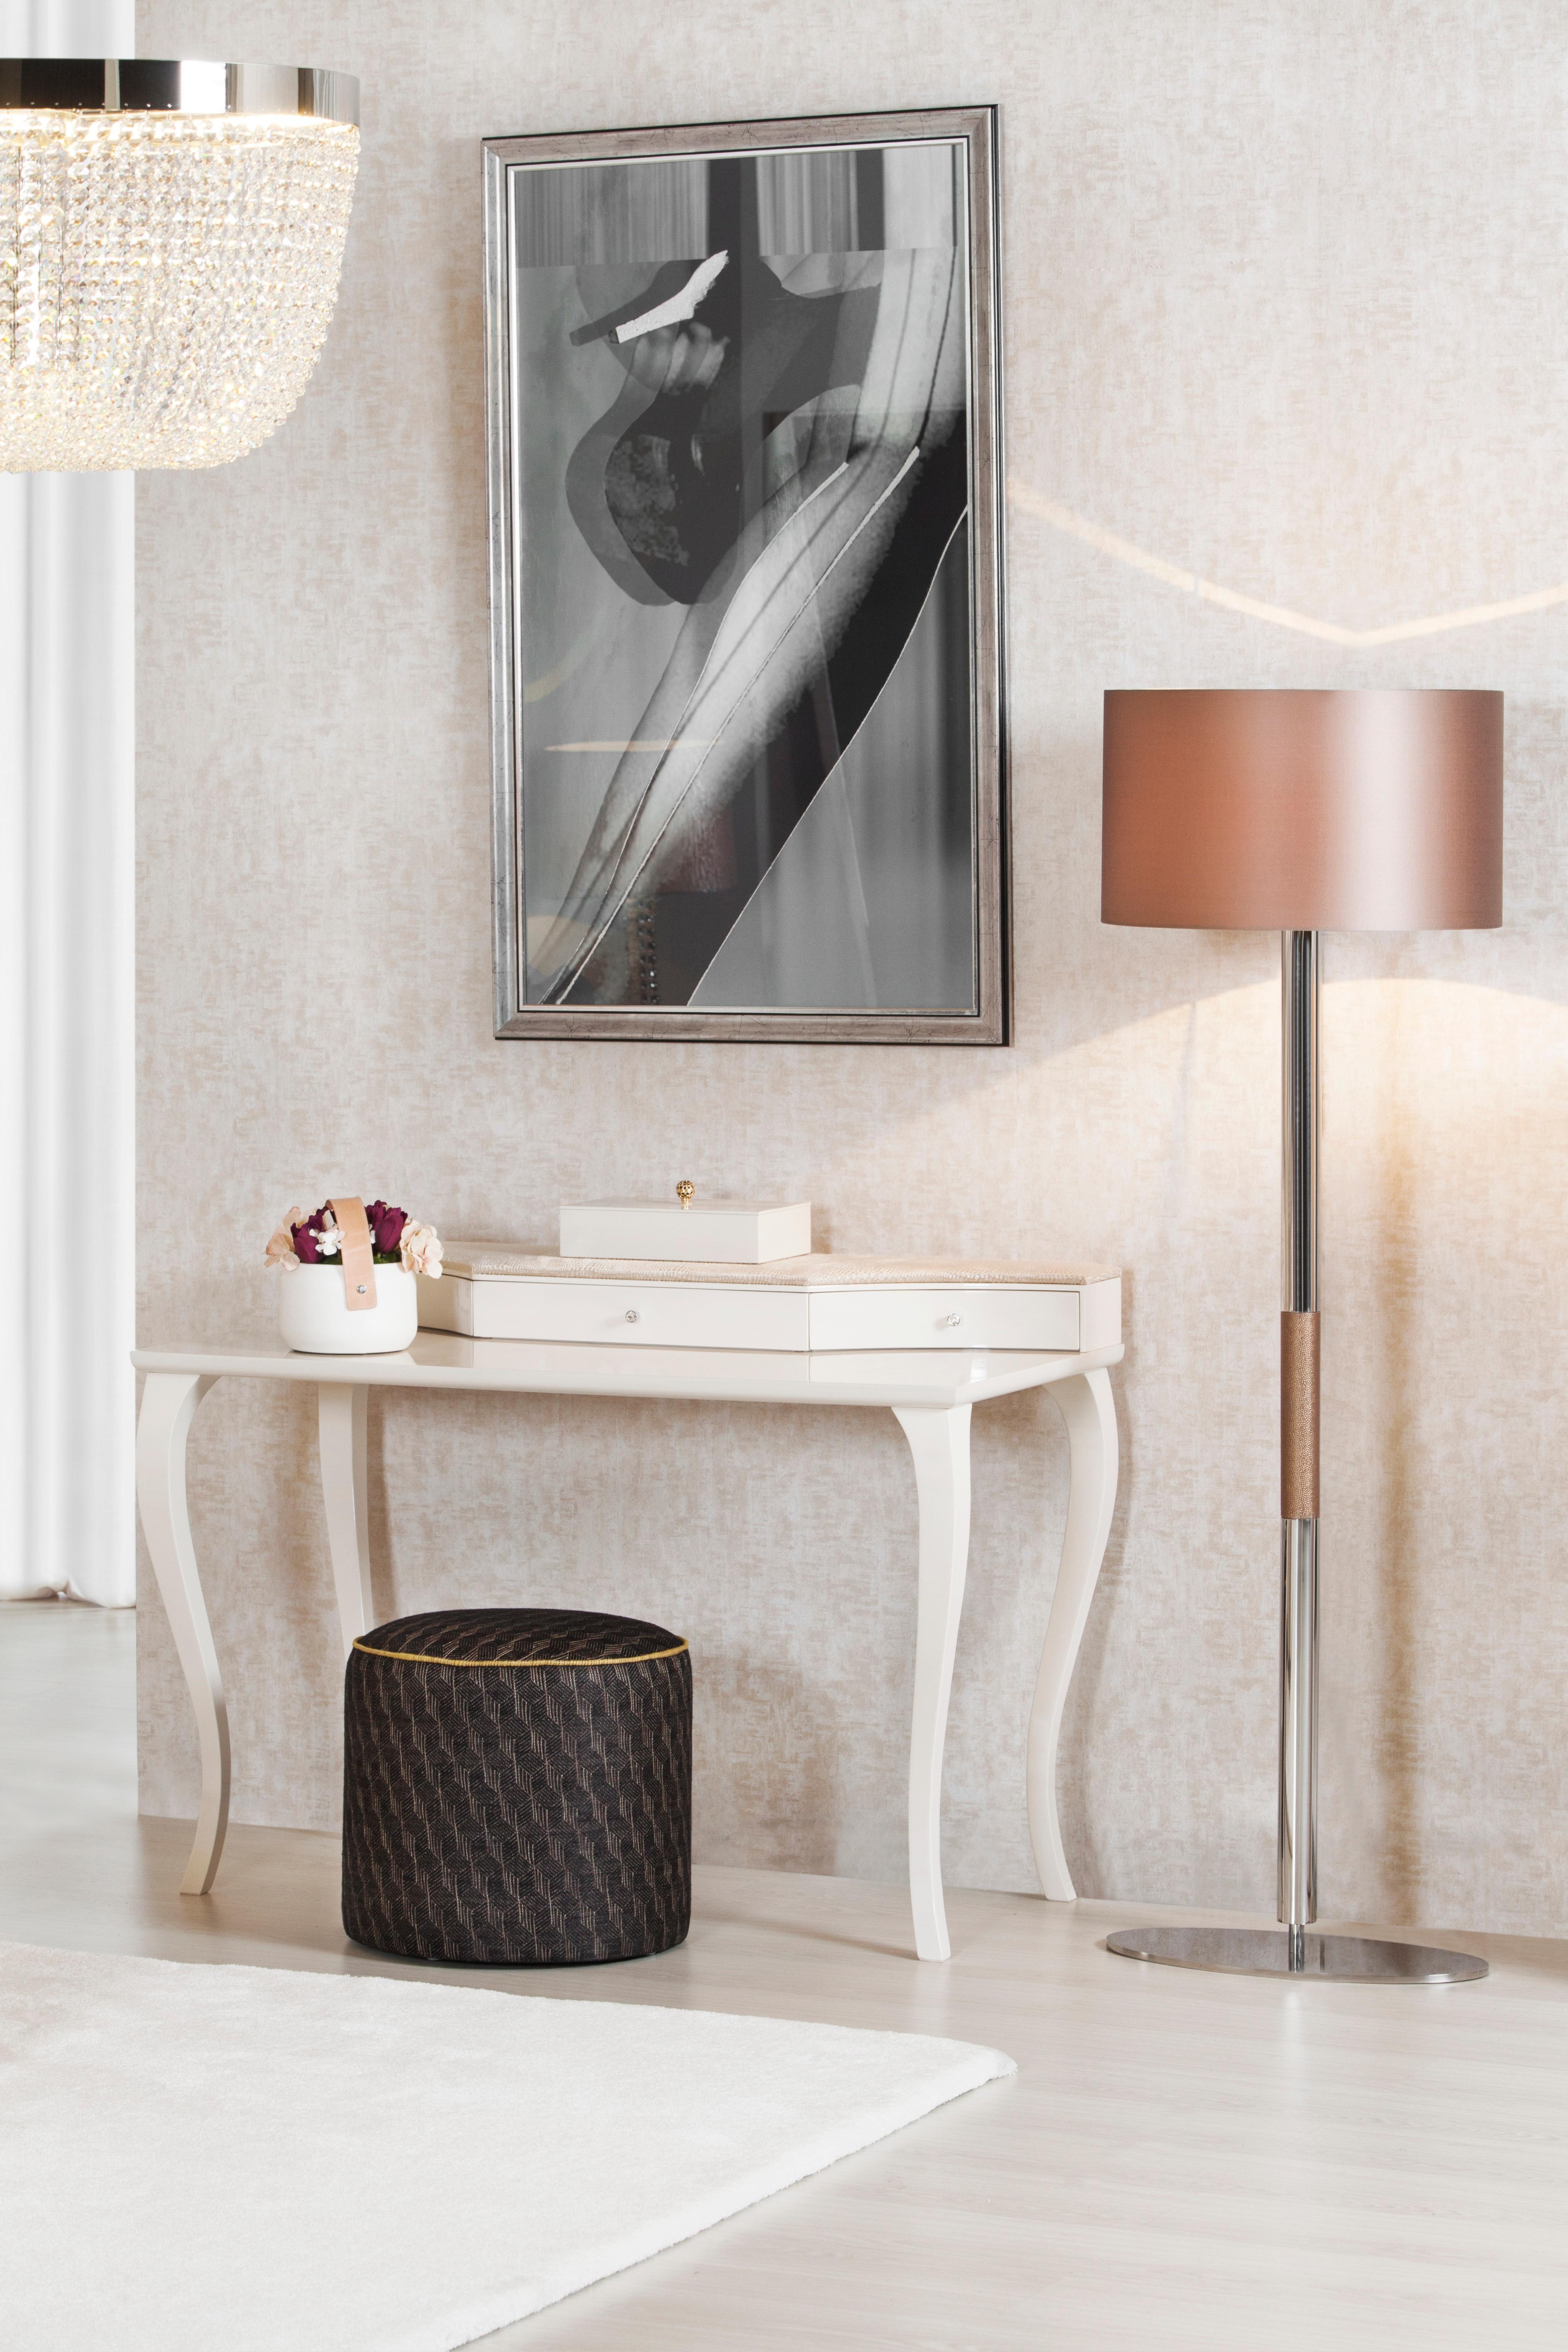 Lampadaire Gau, Collection S, fabriqué à la main au Portugal - Europe par GF Modern.

Le luxueux lampadaire Gau crée une ambiance subliminale pour une vie extraordinaire. Le détail de l'incrustation en faux cuir Bronze s'harmonise avec le